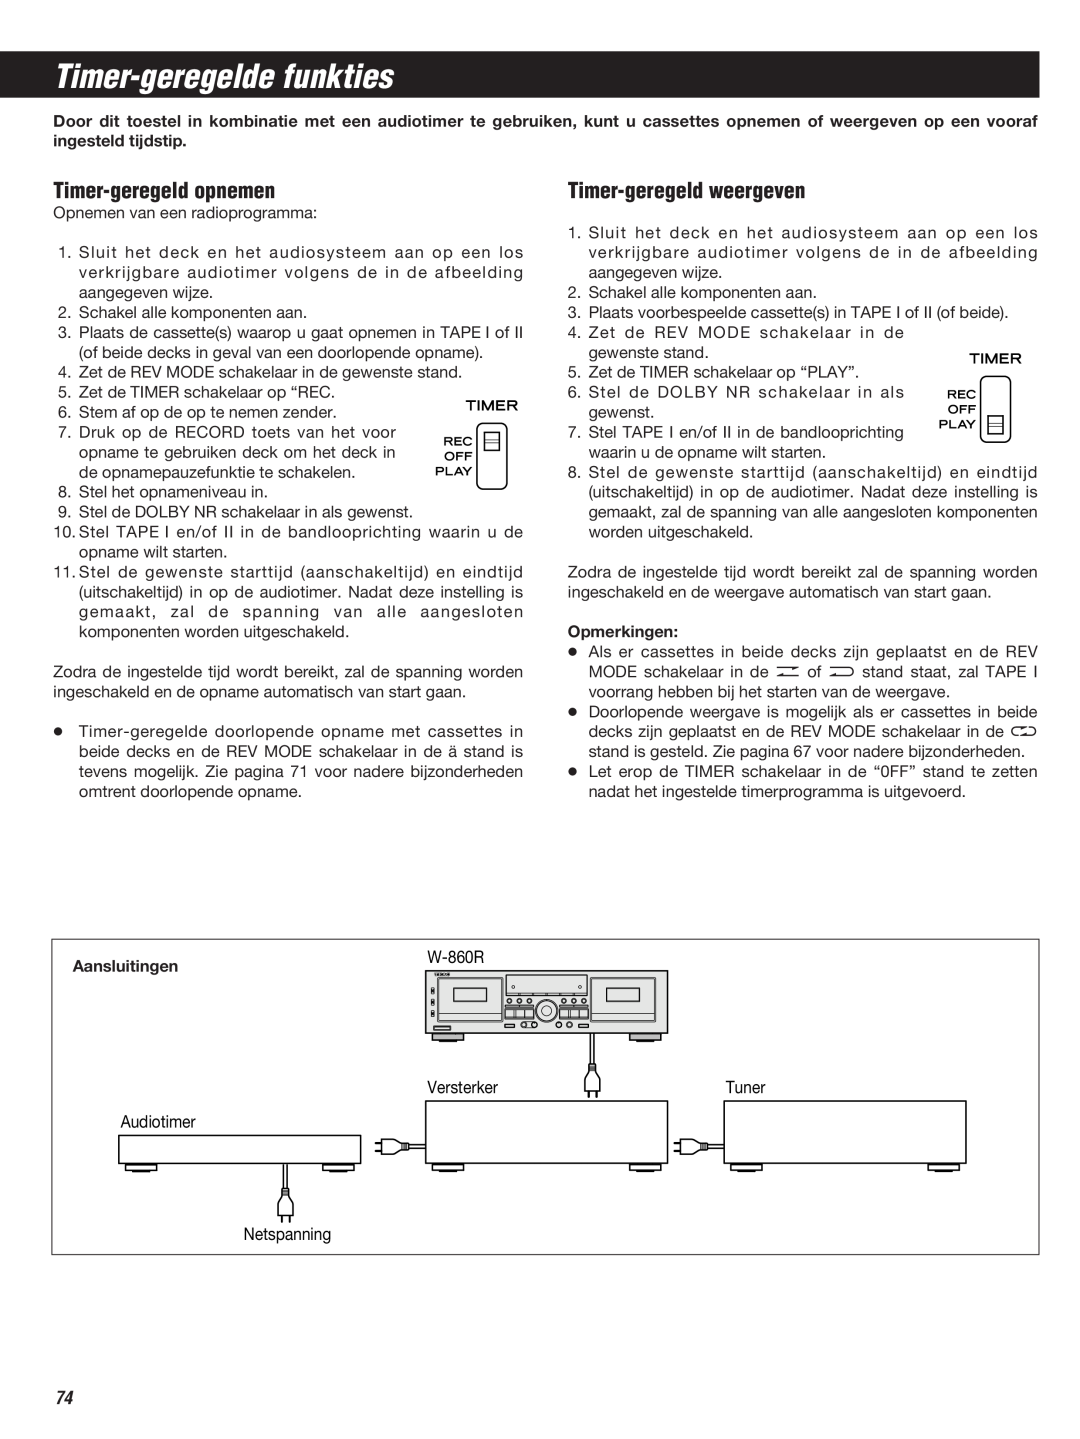 Teac W-860R owner manual Timer-geregeldefunkties, Timer-geregeldopnemen, Timer-geregeldweergeven 